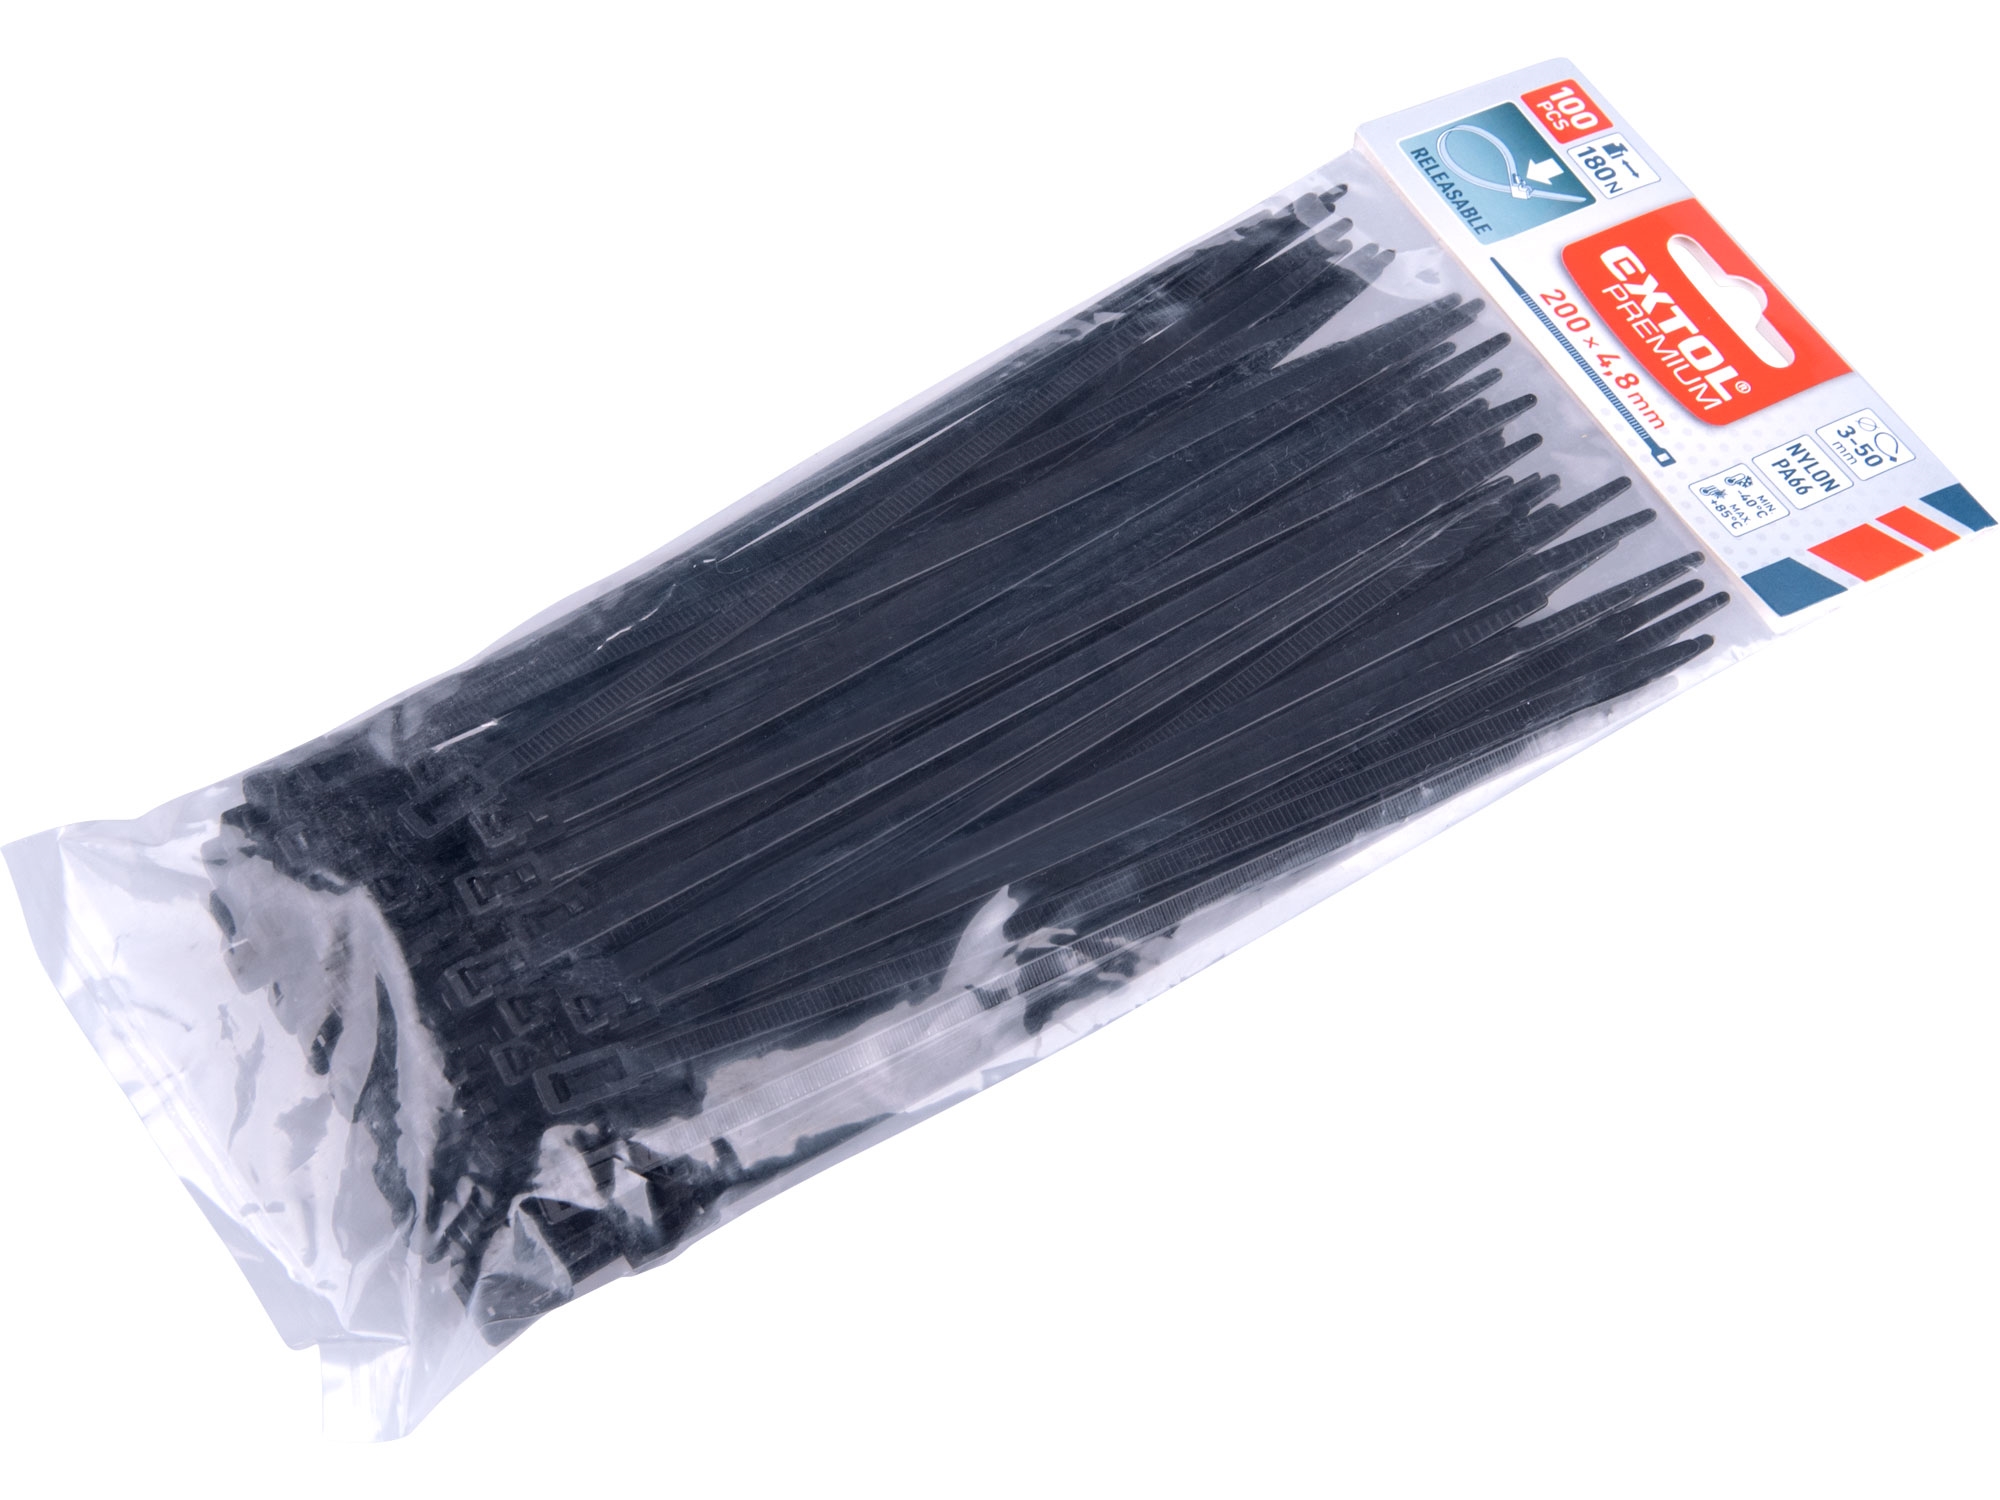 pásky stahovací černé, rozpojitelné, 200x4,8mm, 100ks, nylon PA66